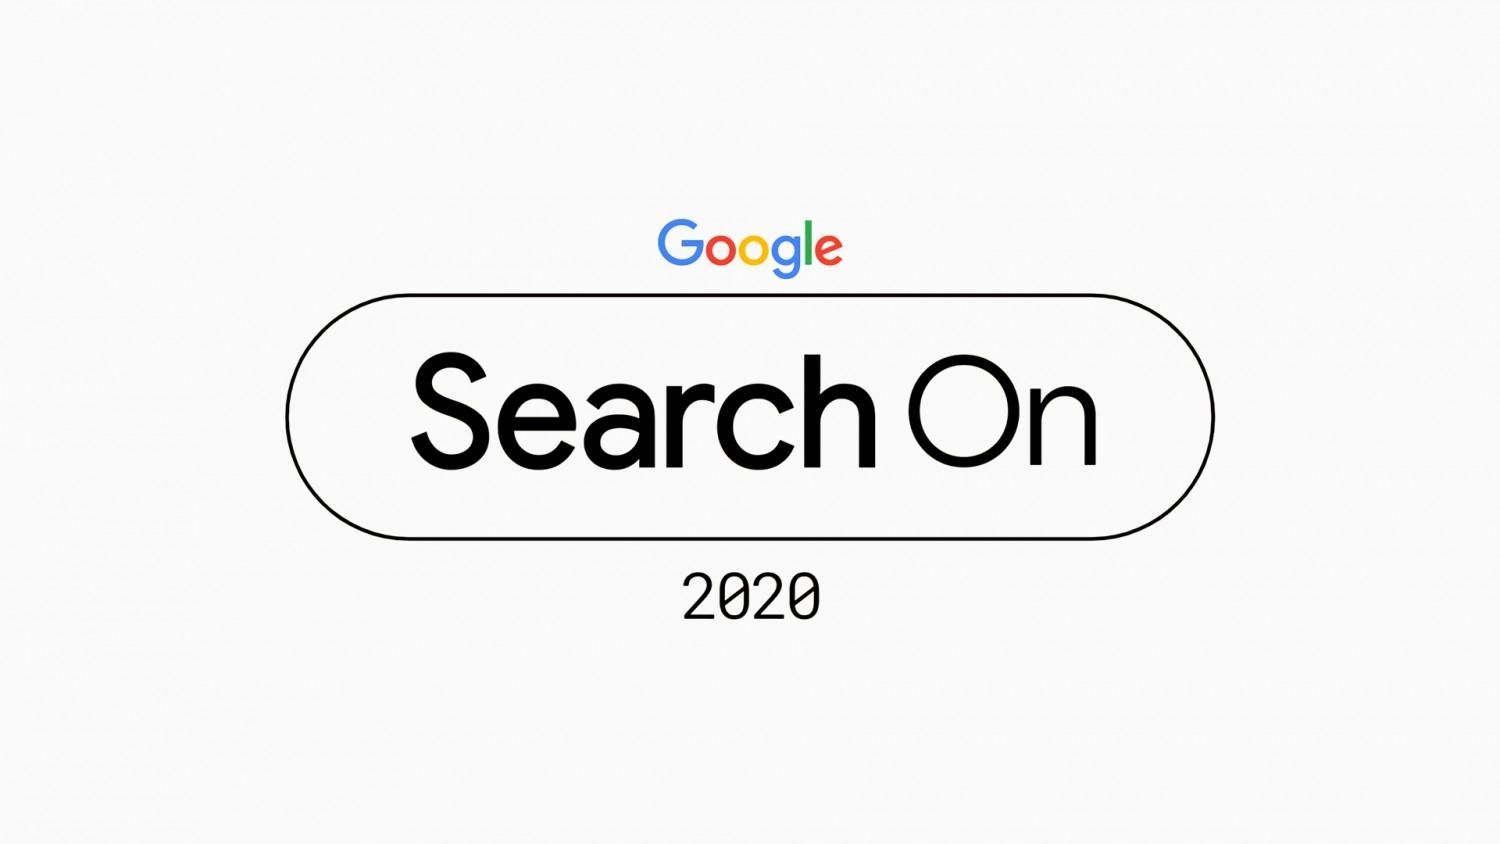 Google анонсировала ивент Search On: на мероприятии расскажут об улучшении поиска